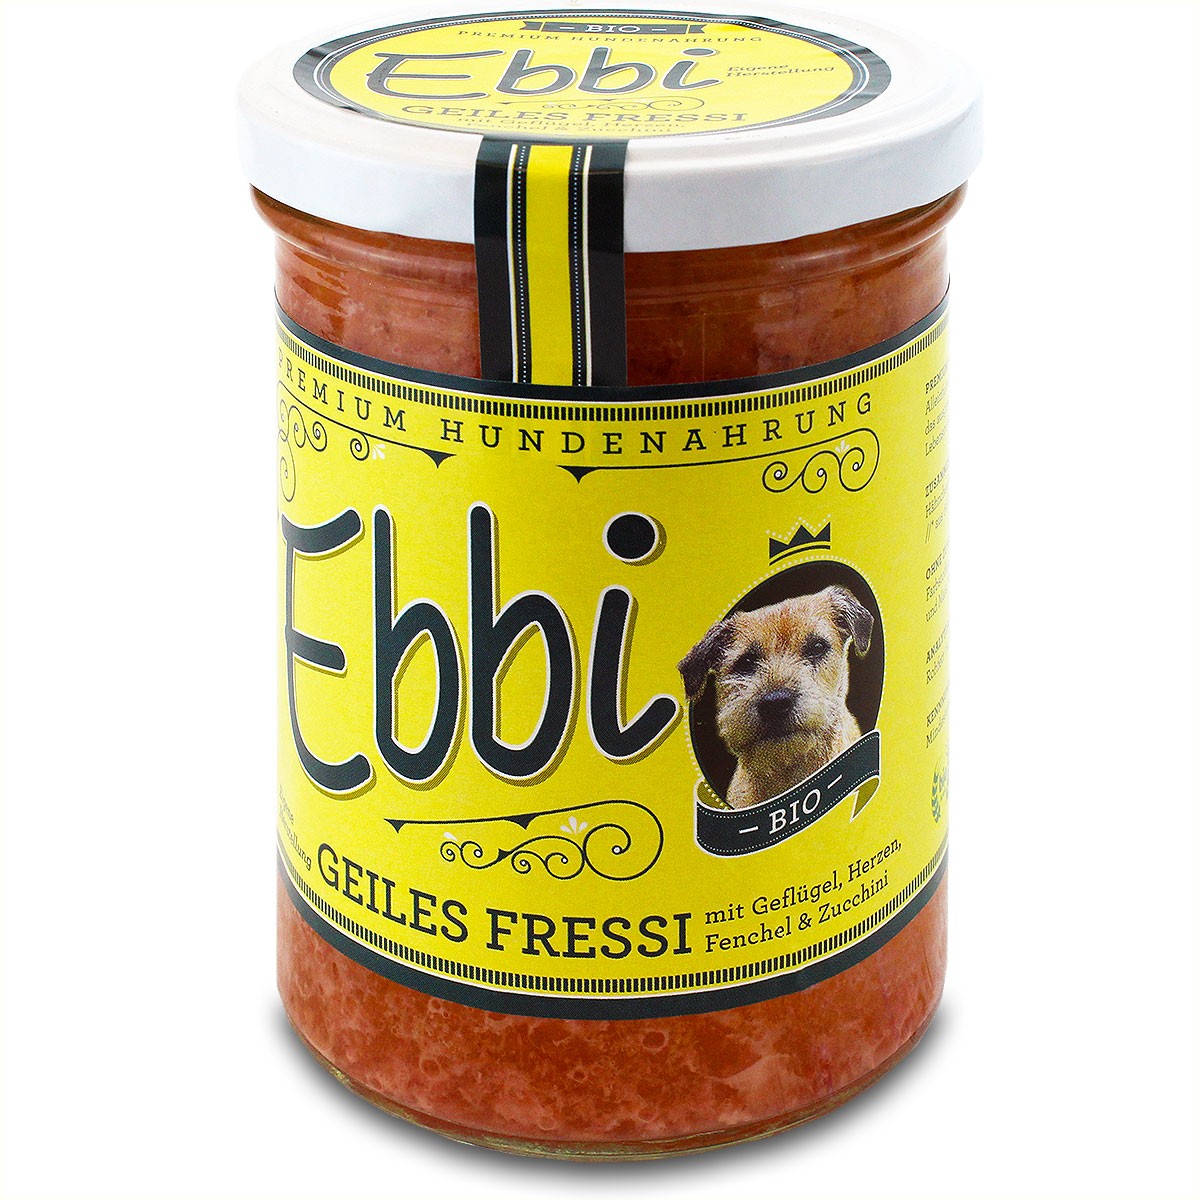 Ebbi "Bio Geiles Fressi" für den Hund